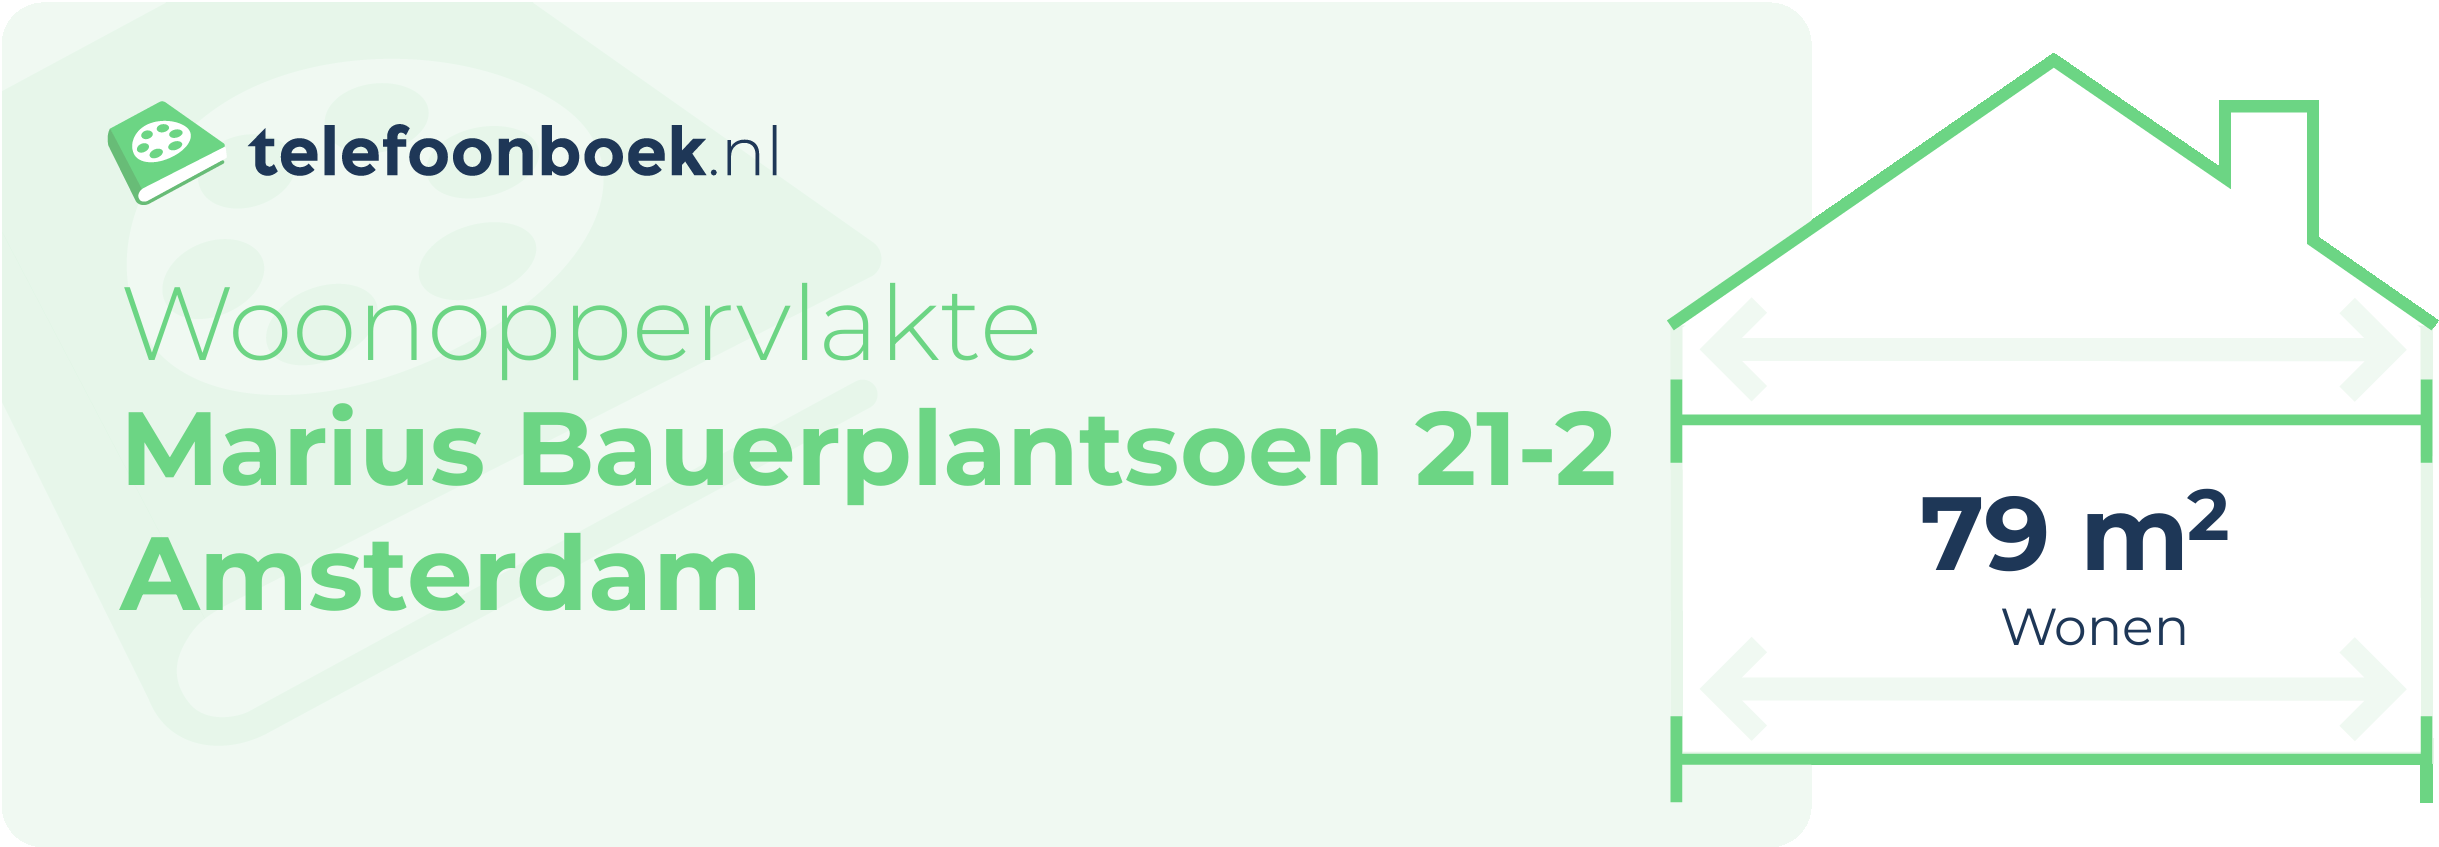 Woonoppervlakte Marius Bauerplantsoen 21-2 Amsterdam